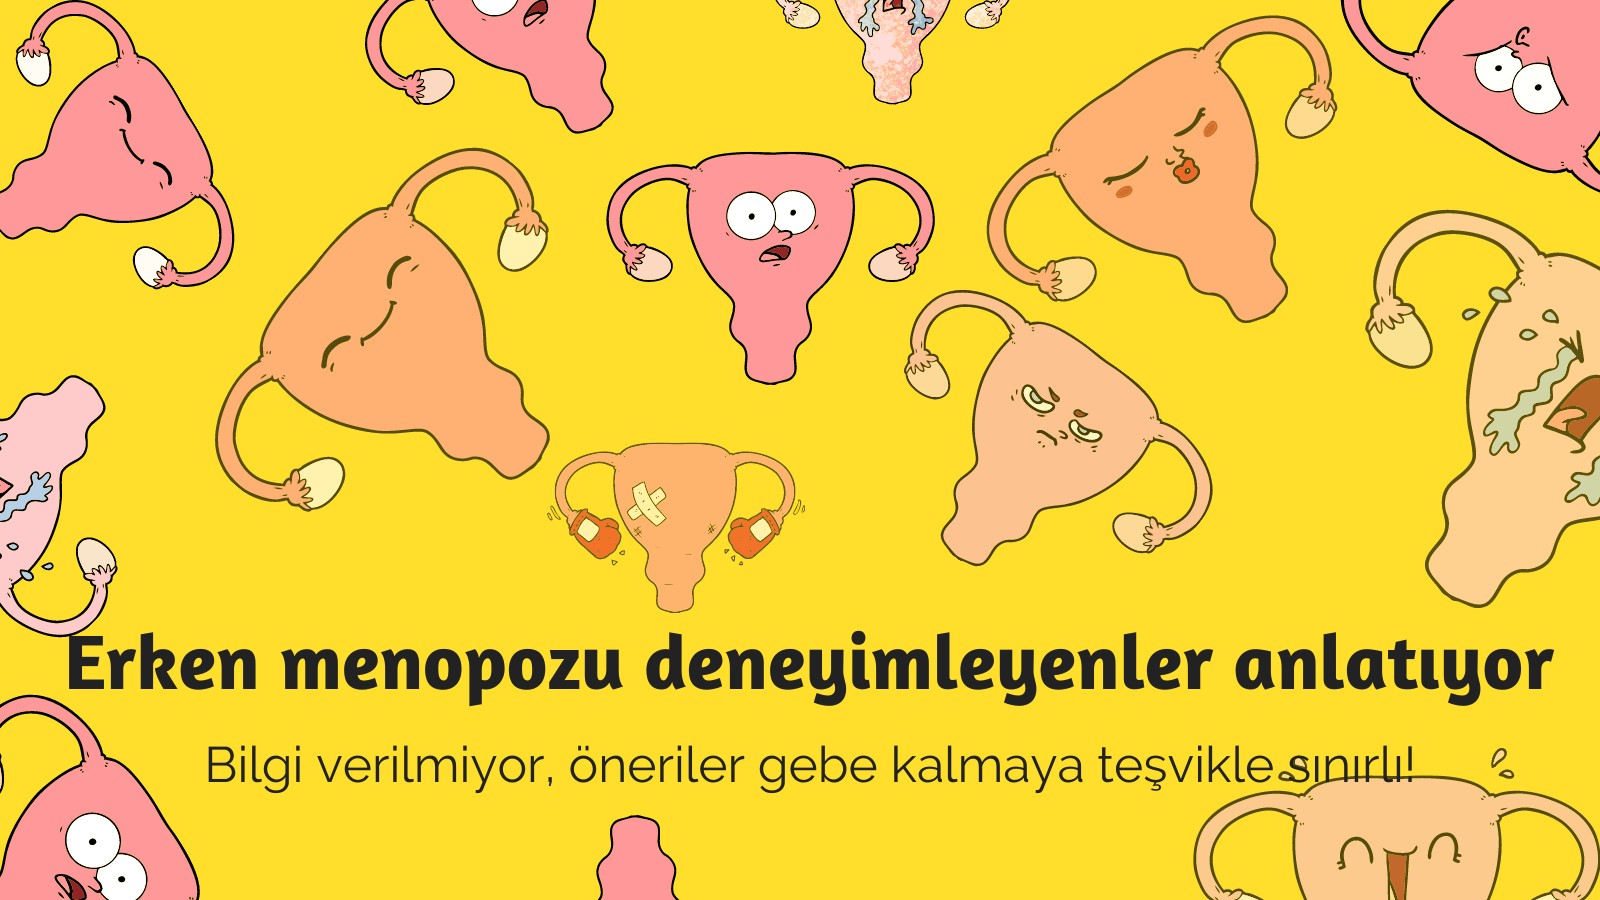 Erken menopozu deneyimleyenler anlatıyor: Bilgi verilmiyor, öneriler gebe kalmaya teşvikle sınırlı! | Kaos GL - LGBTİ+ Haber Portalı Gökkuşağı Forumu Köşe Yazısı